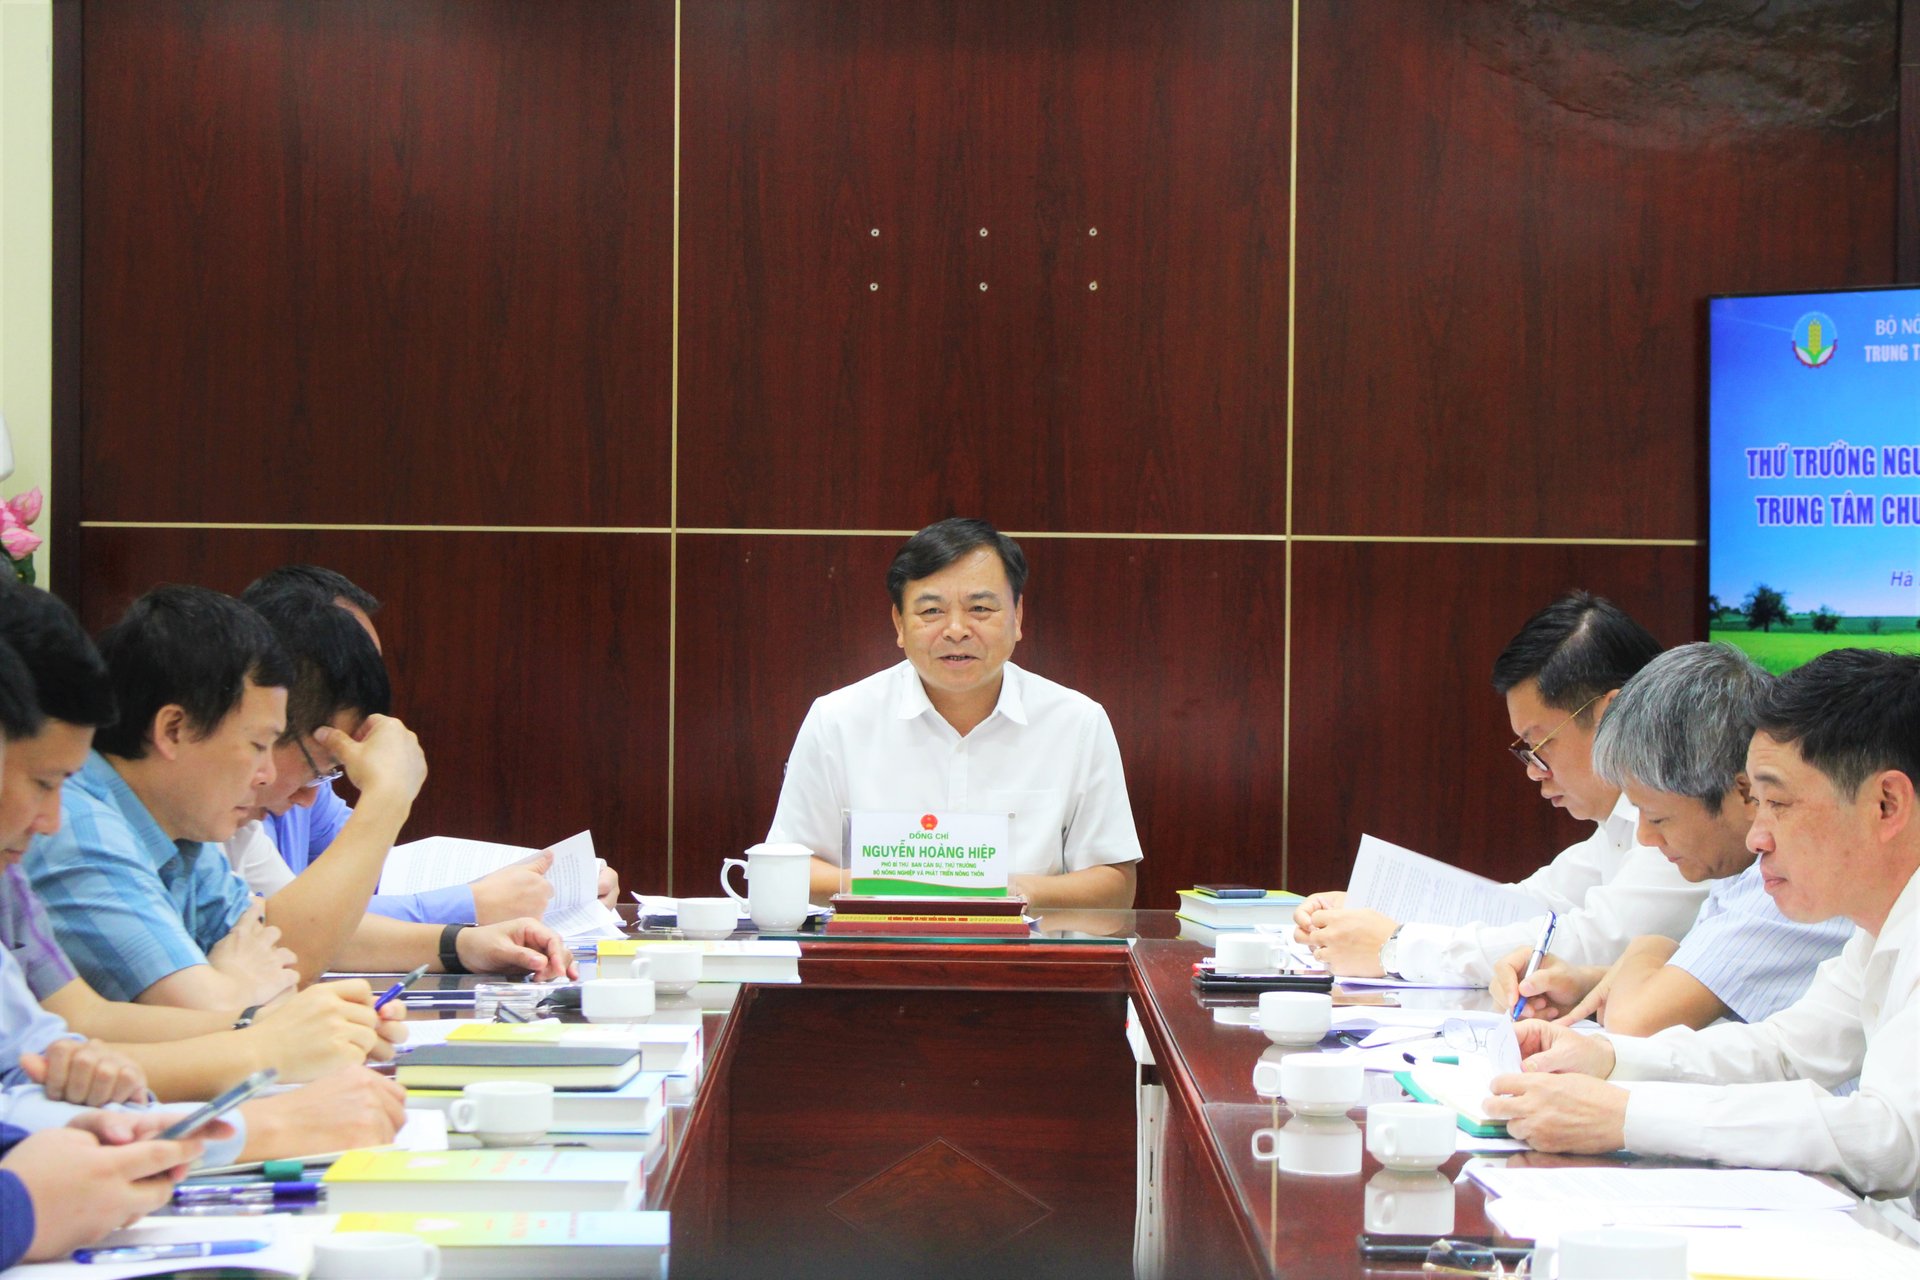 Thứ trưởng Bộ NN-PTNT Nguyễn Hoàng Hiệp yêu cầu Trung tâm Chuyển đổi số và Thống kê nông nghiệp cần nhanh chóng hoàn thiện cơ cấu tổ chức; nắm vững chức năng, nhiệm vụ của mình để triển khai các hoạt động có hiệu quả. Ảnh: Trung Quân.